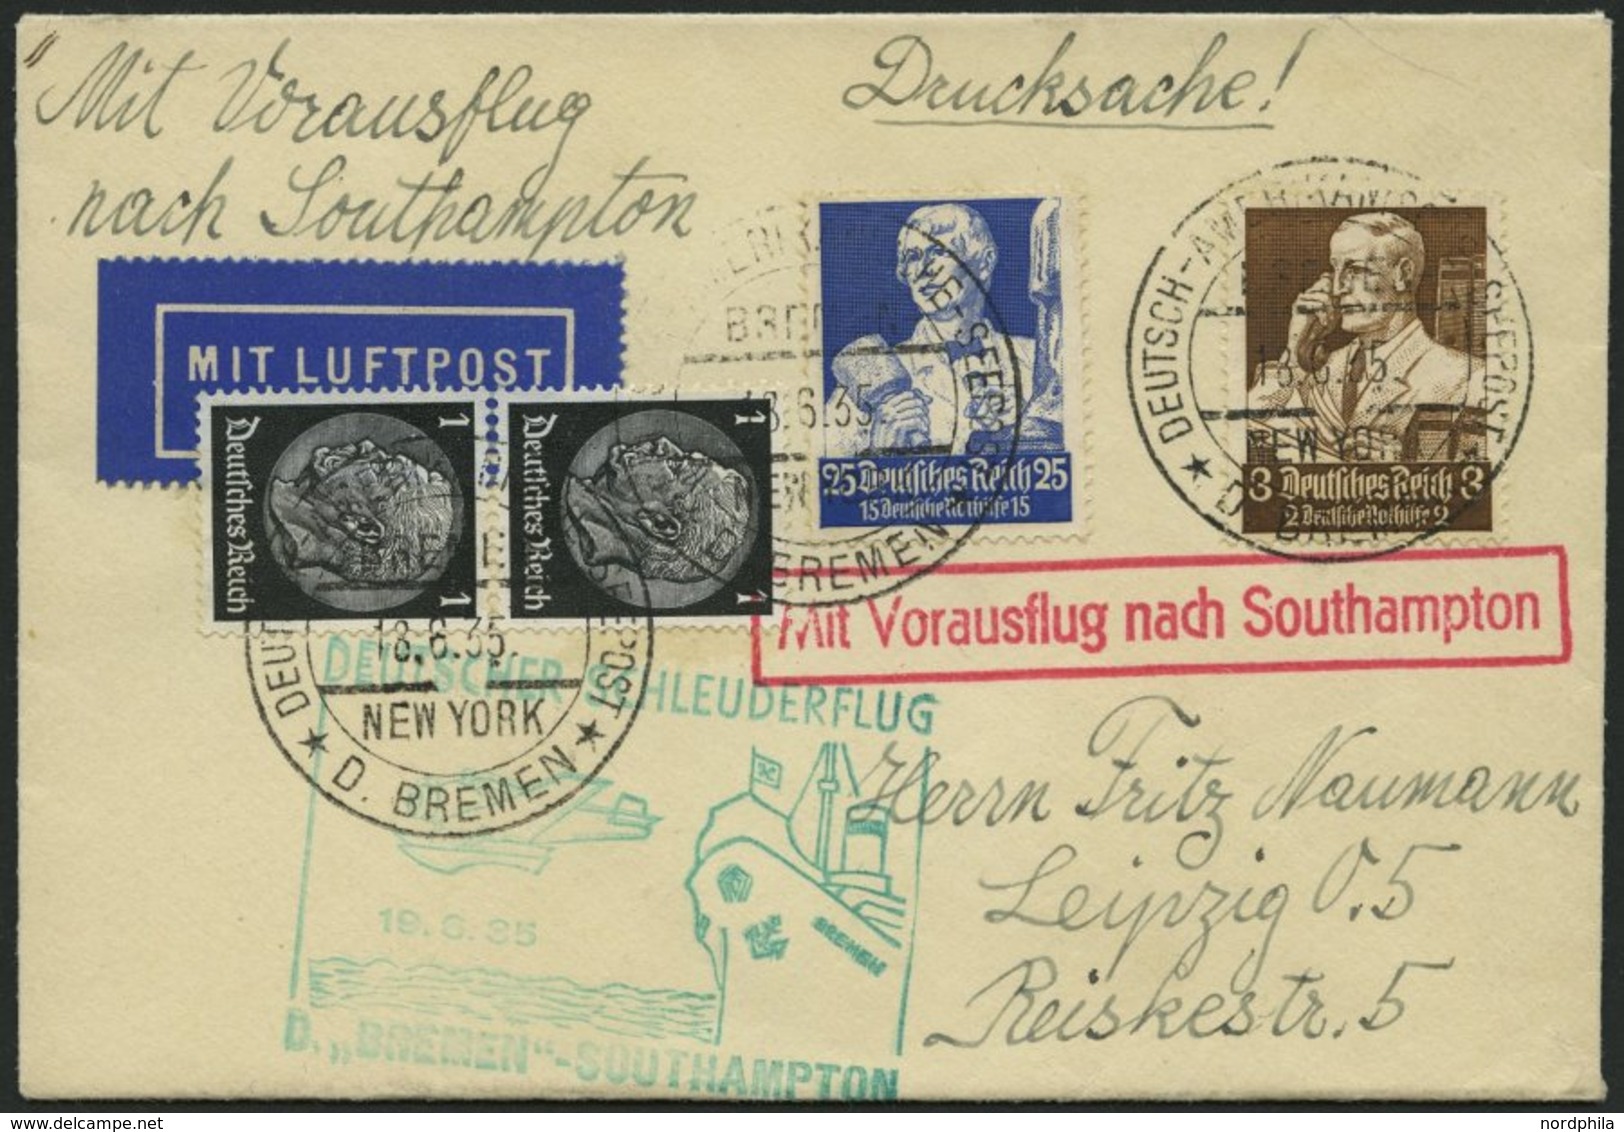 KATAPULTPOST 194c BRIEF, 19.6.1935, Bremen - Southampton, Deutsche Seepostaufgabe, Frankiert U.a. Mit Mi.Nr. 563, Drucks - Covers & Documents